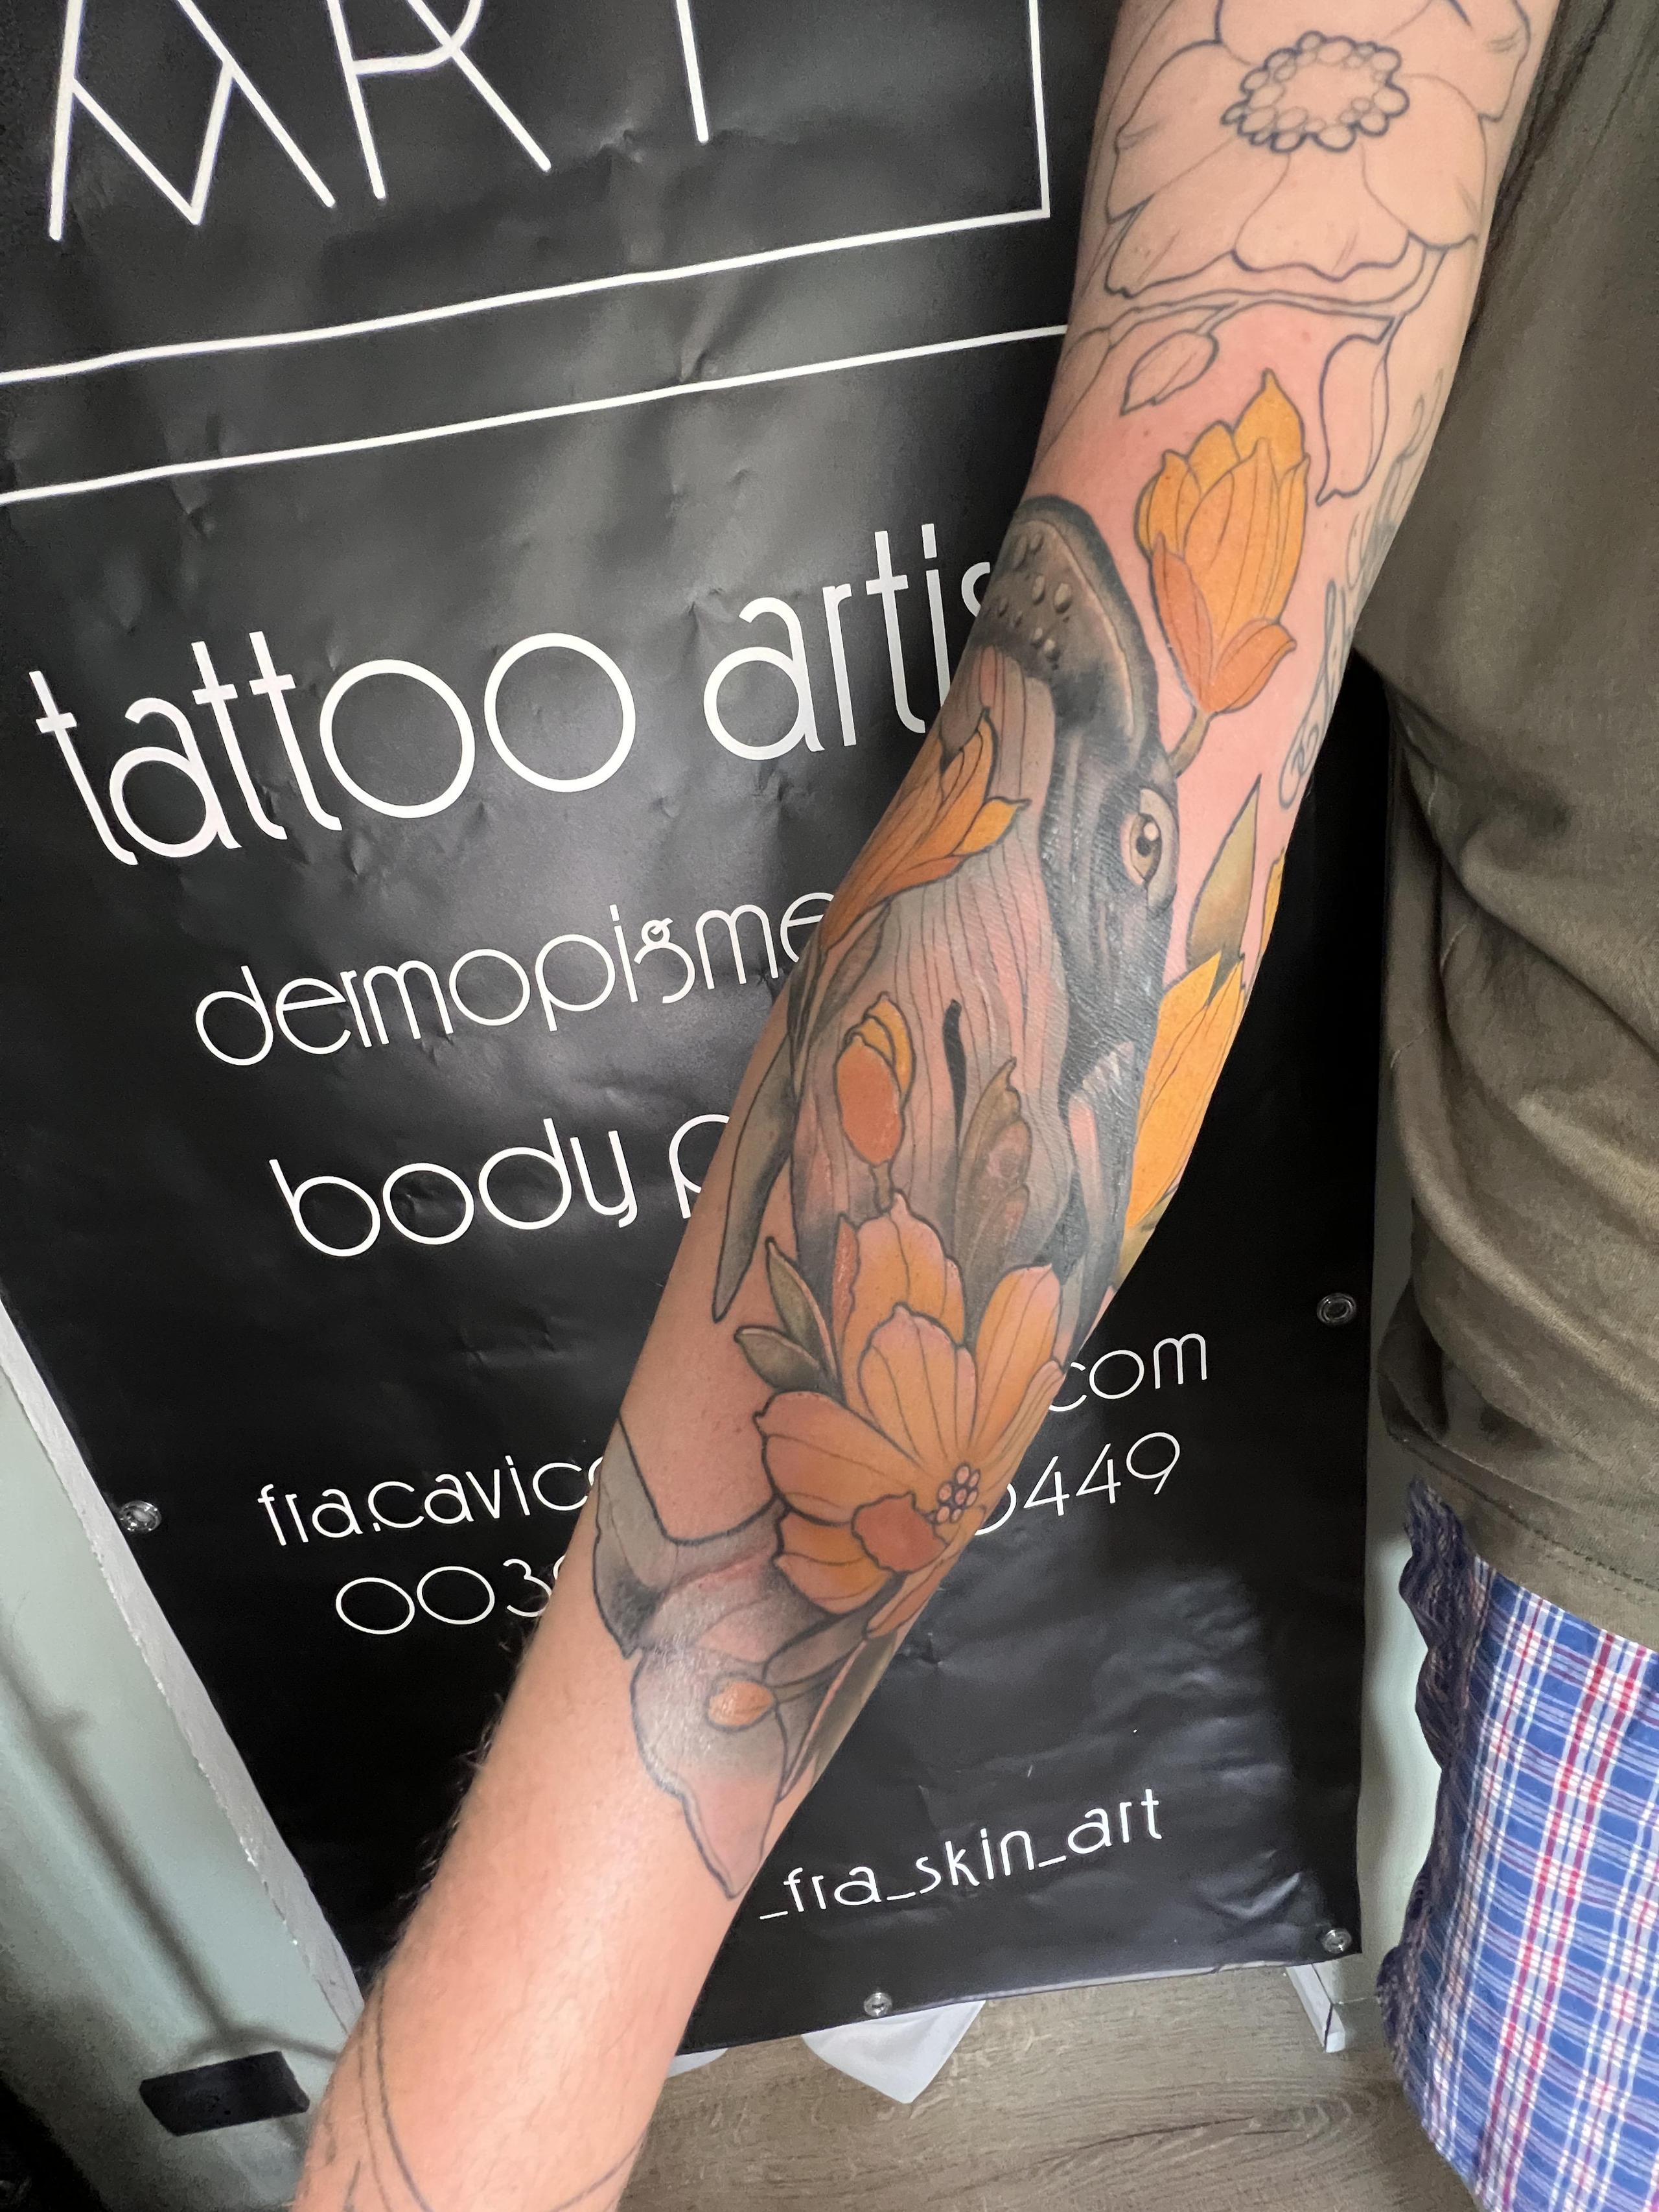 Tatuaggio commerciale? no grazie!